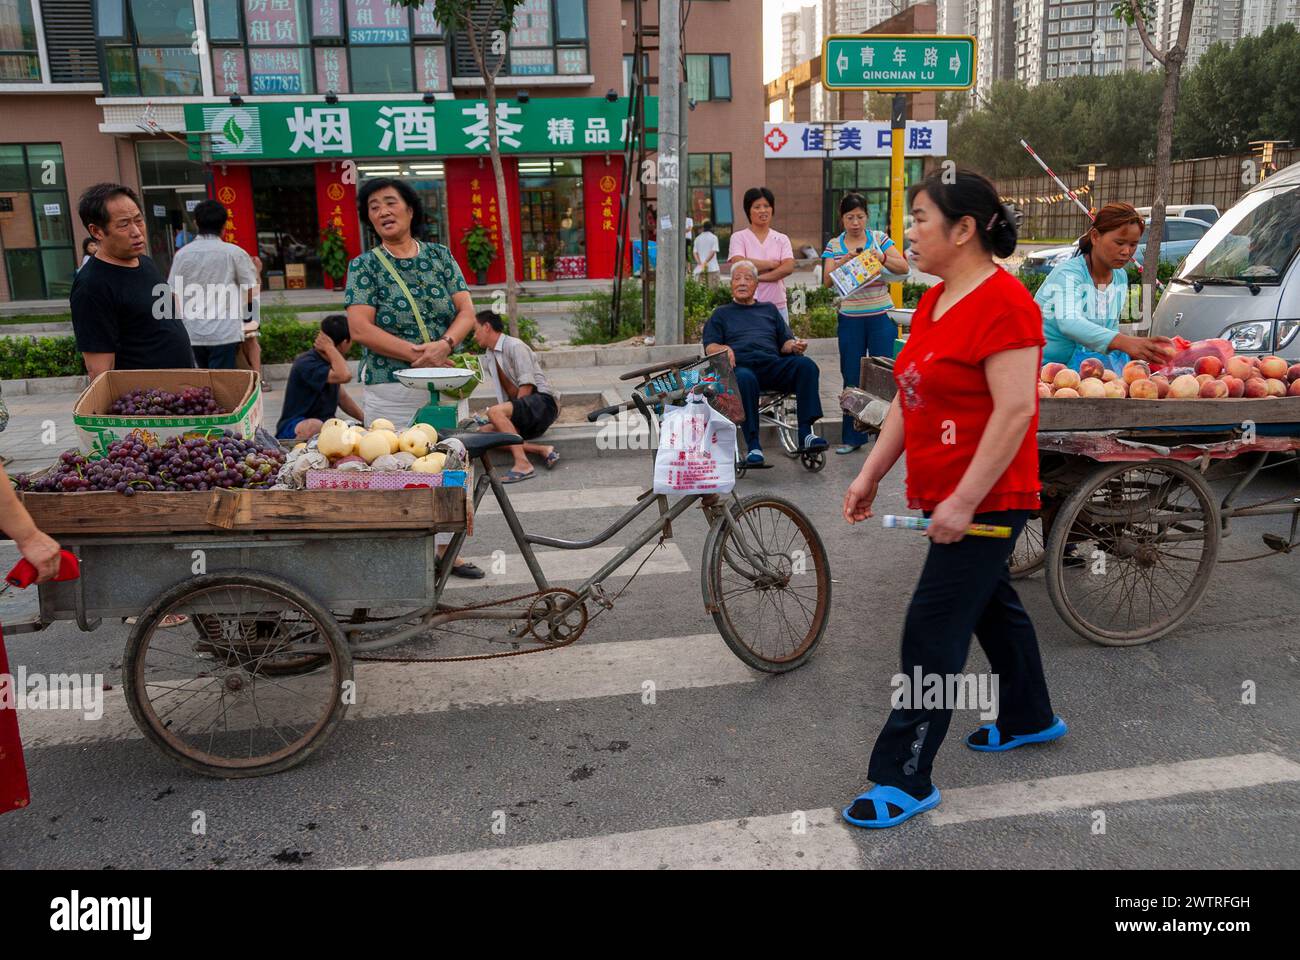 Pékin, CHINE- migrants chinois, vendeur de rue vendant marchés alimentaires publics, affaires, extérieur, scène de rue animée Banque D'Images